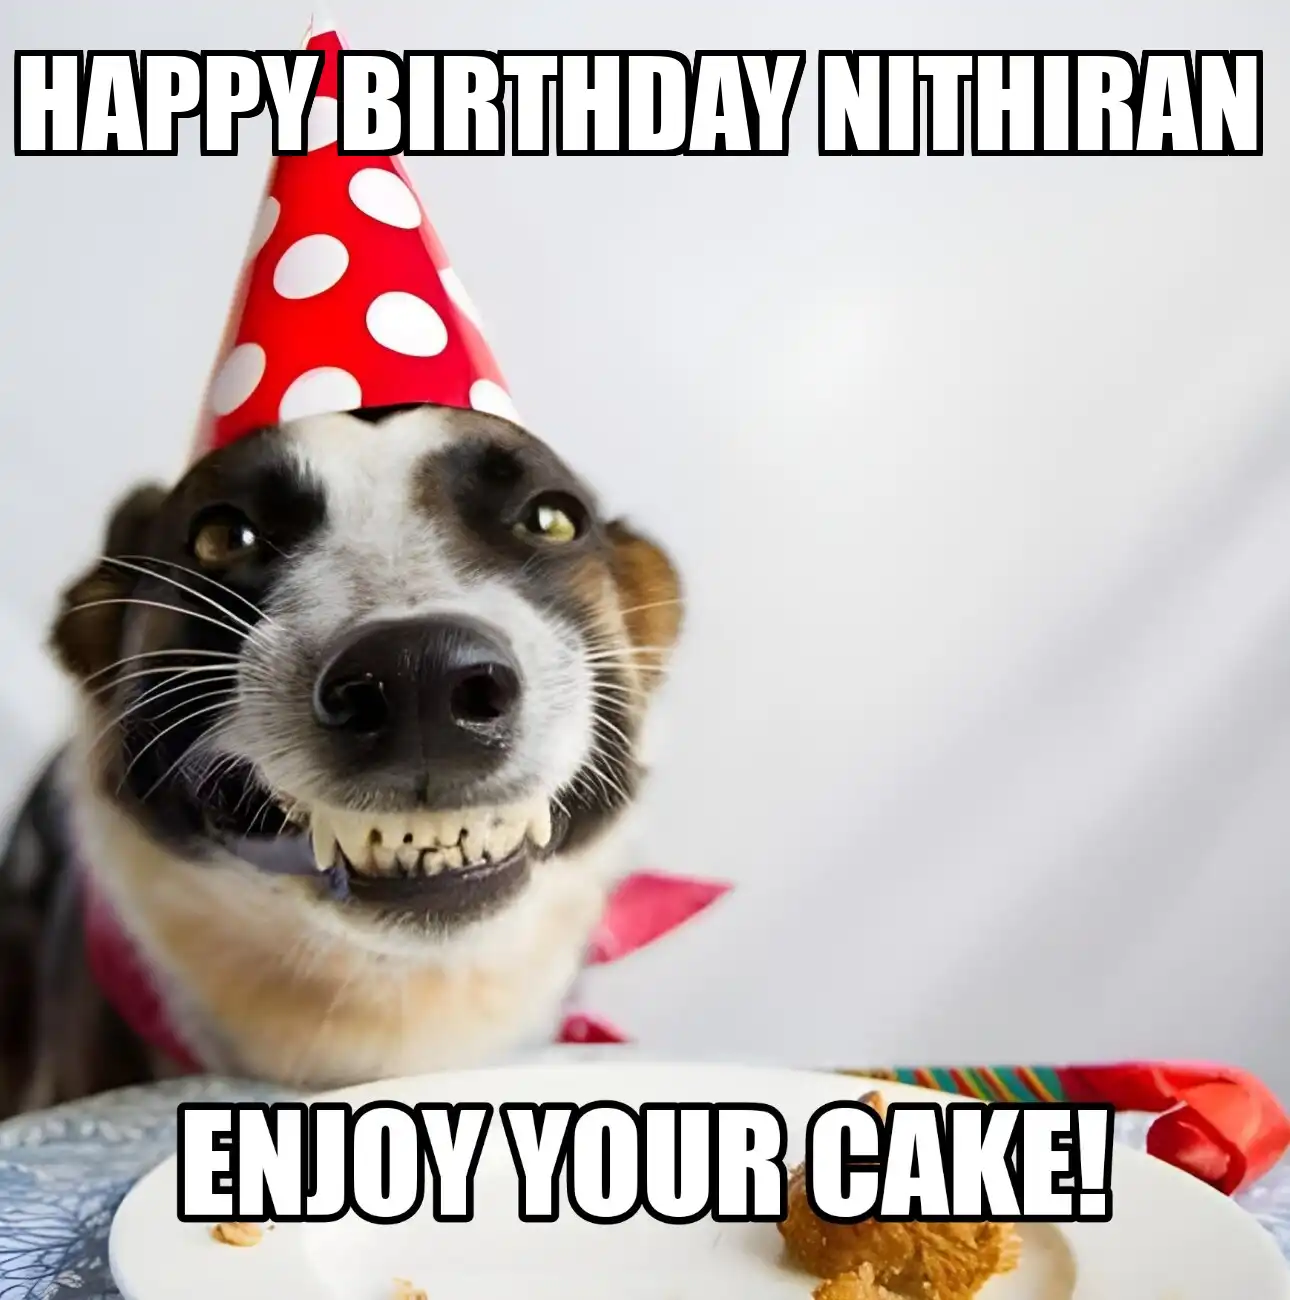 Happy Birthday Nithiran Enjoy Your Cake Dog Meme